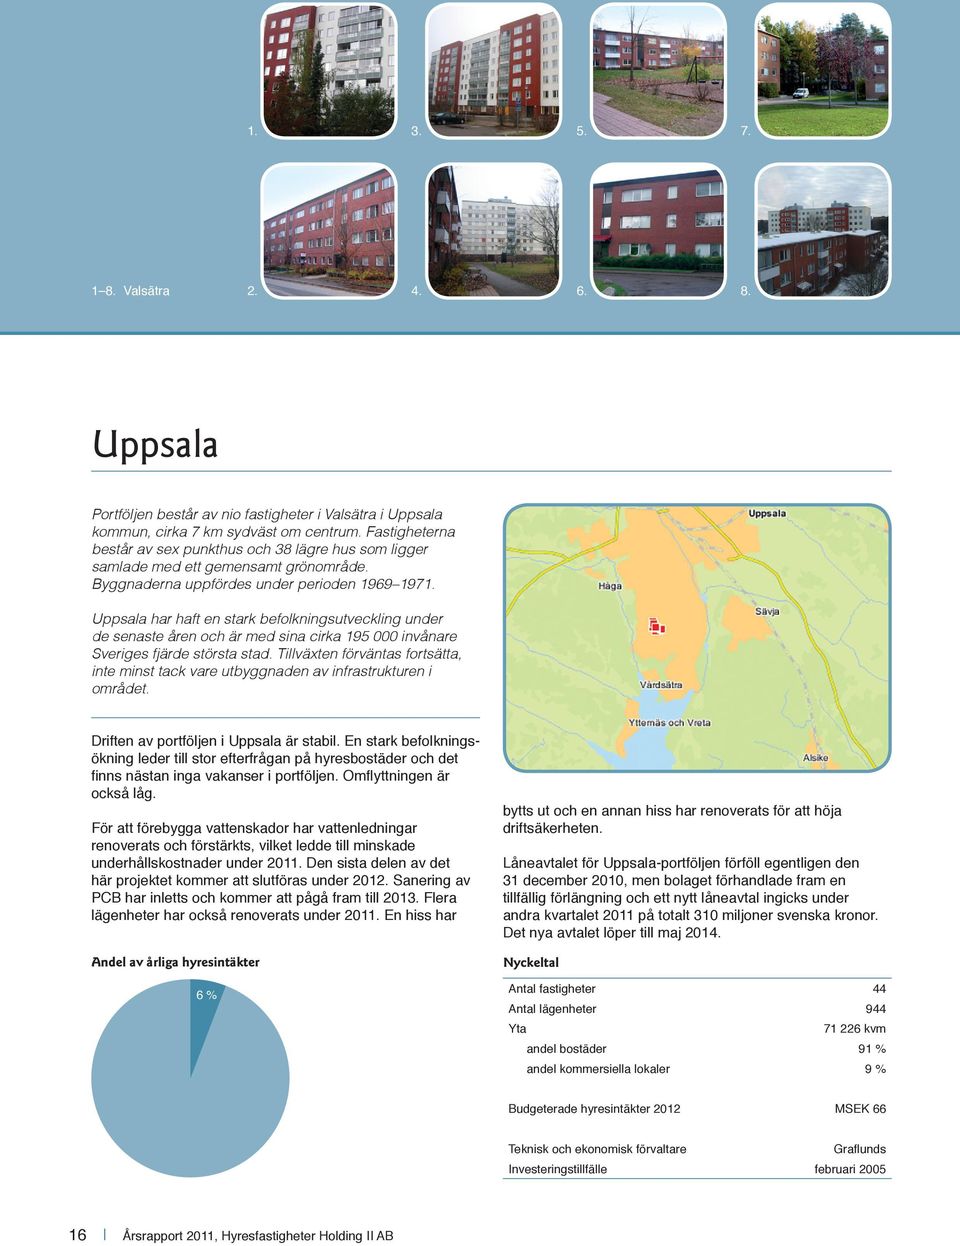 Uppsala har haft en stark befolkningsutveckling under de senaste åren och är med sina cirka 195 000 invånare Sveriges fjärde största stad.